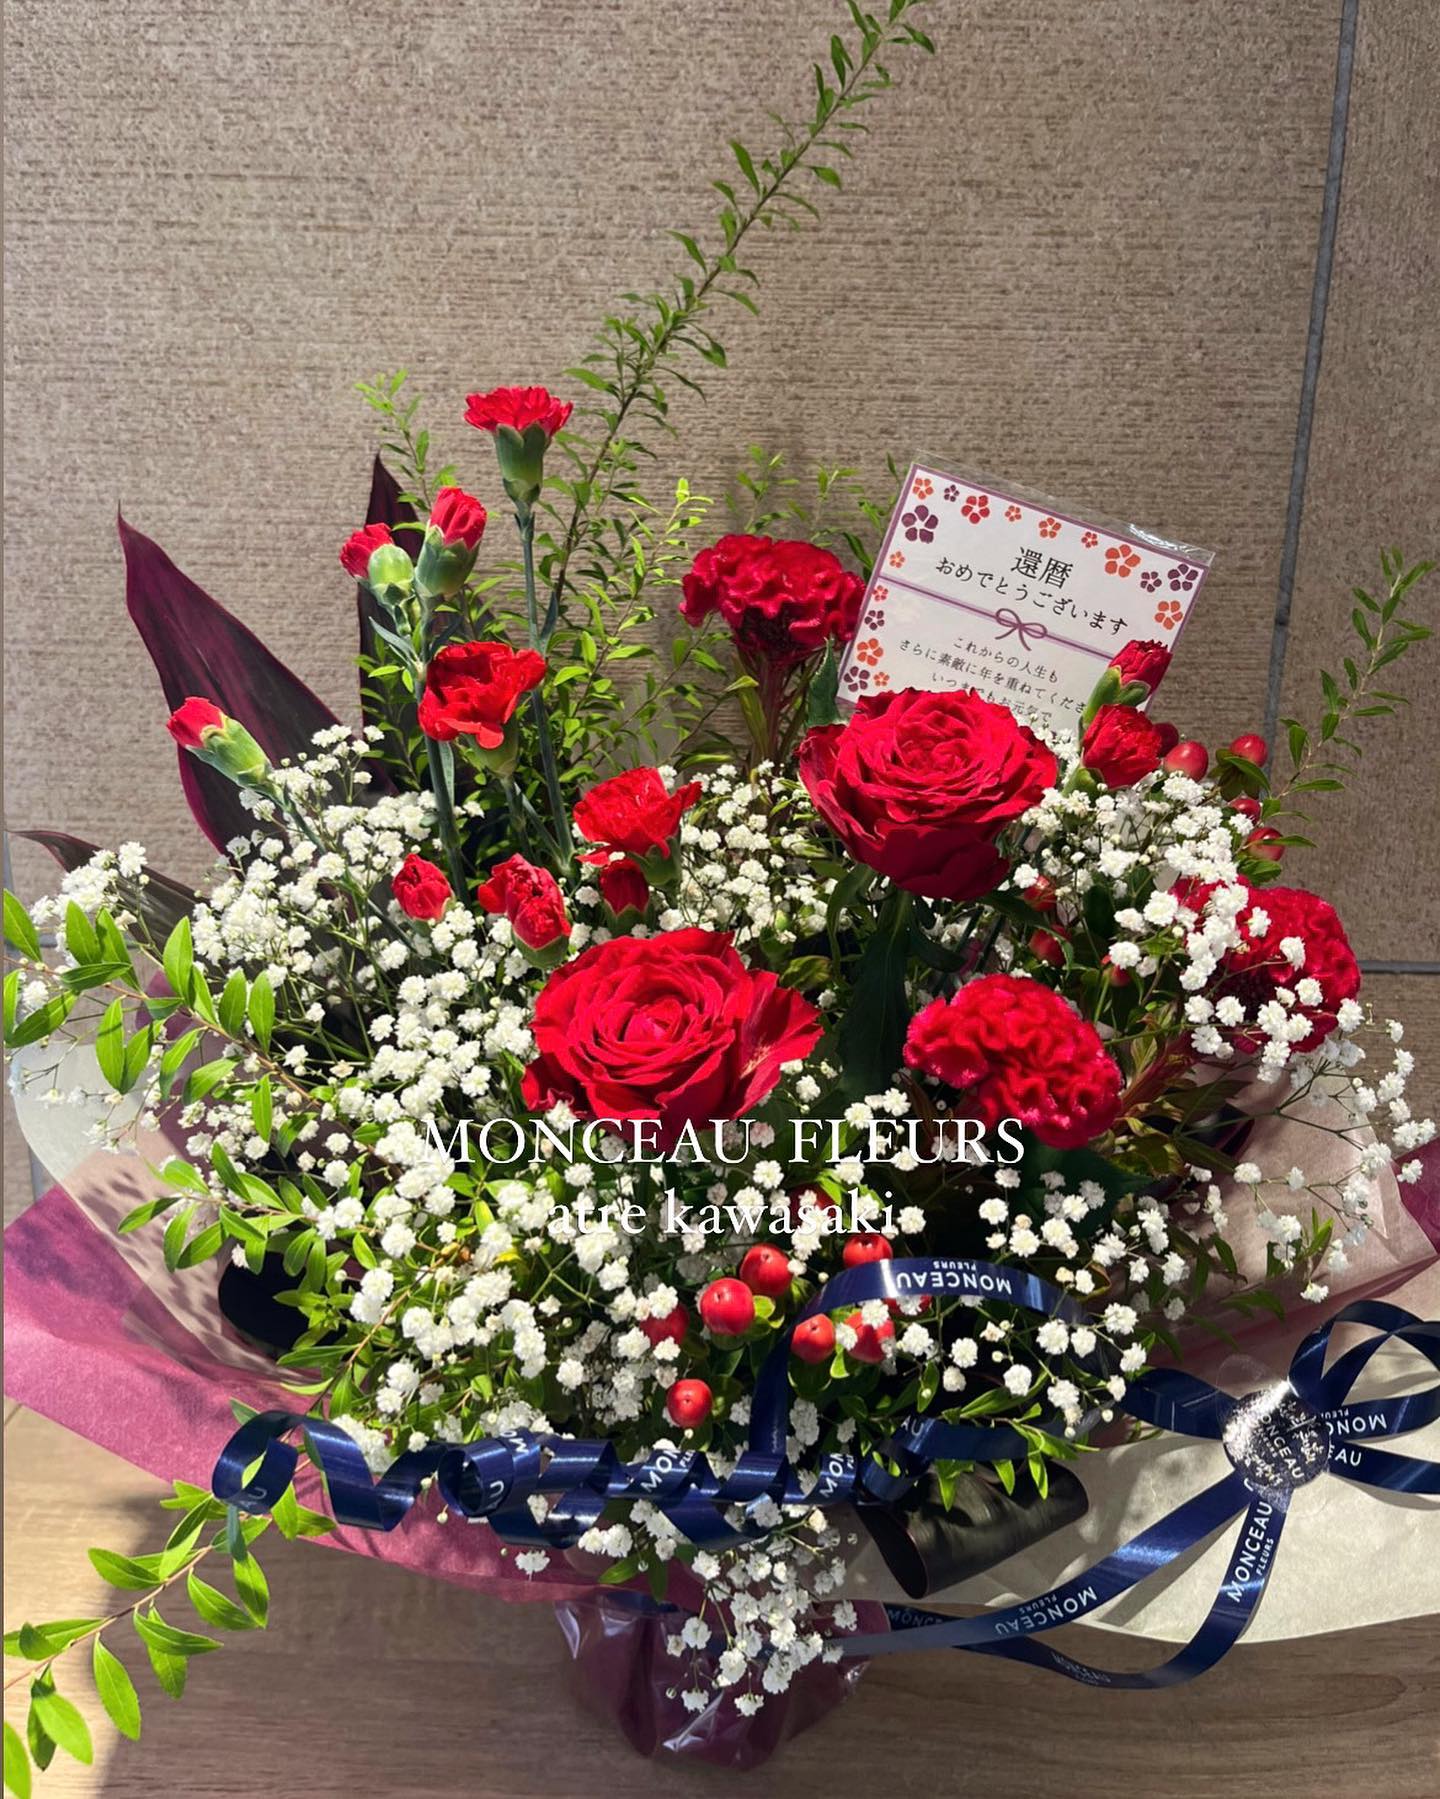 .

還暦のお祝いにお作りしたアレンジメント
バラをメインに様々な真っ赤な花材を
お入れしました🪭ご注文ありがとうございました。

ご要望に合わせてお作りいたします。
ご予約は店頭またはお電話にて承ります。
本日も皆様のご来店をお待ちしております。

 


お気軽にお問い合わせください。
【モンソーフルール アトレ川崎店】
〒210-0007
神奈川県川崎市川崎区駅前本町26-1
アトレ川崎1F
TEL&FAX:044-200-6701
営業時間:10:00〜21:00